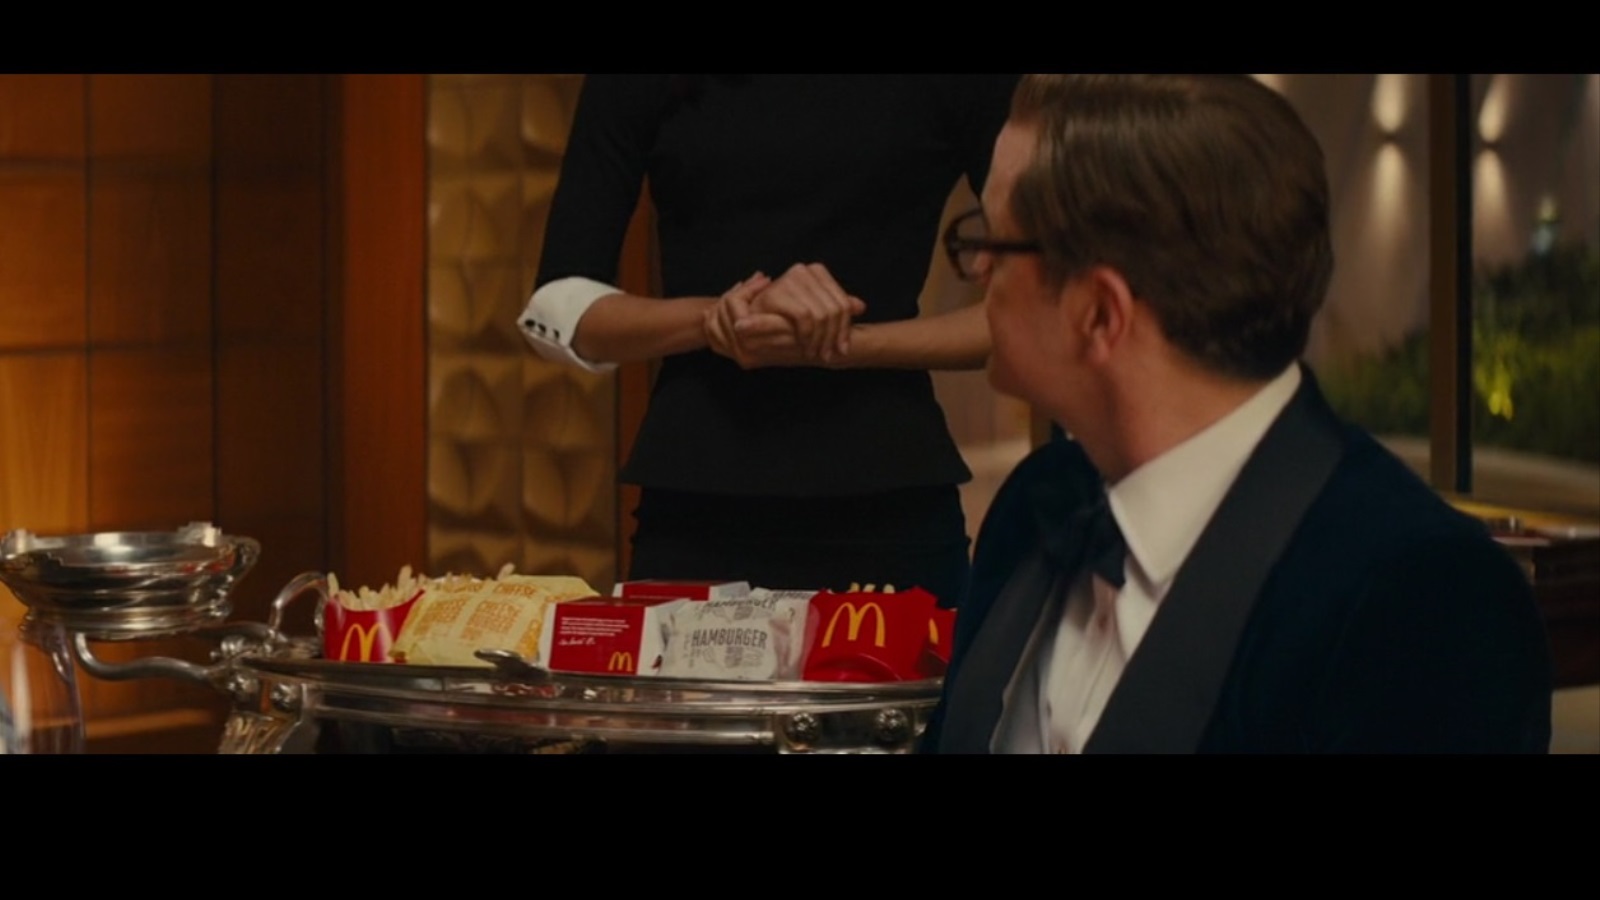 مشهد من فيلم the secret service تظهر فيه العلامة التجارية لماكدونالدز في سياق الفيلم (مواقع التواصل)